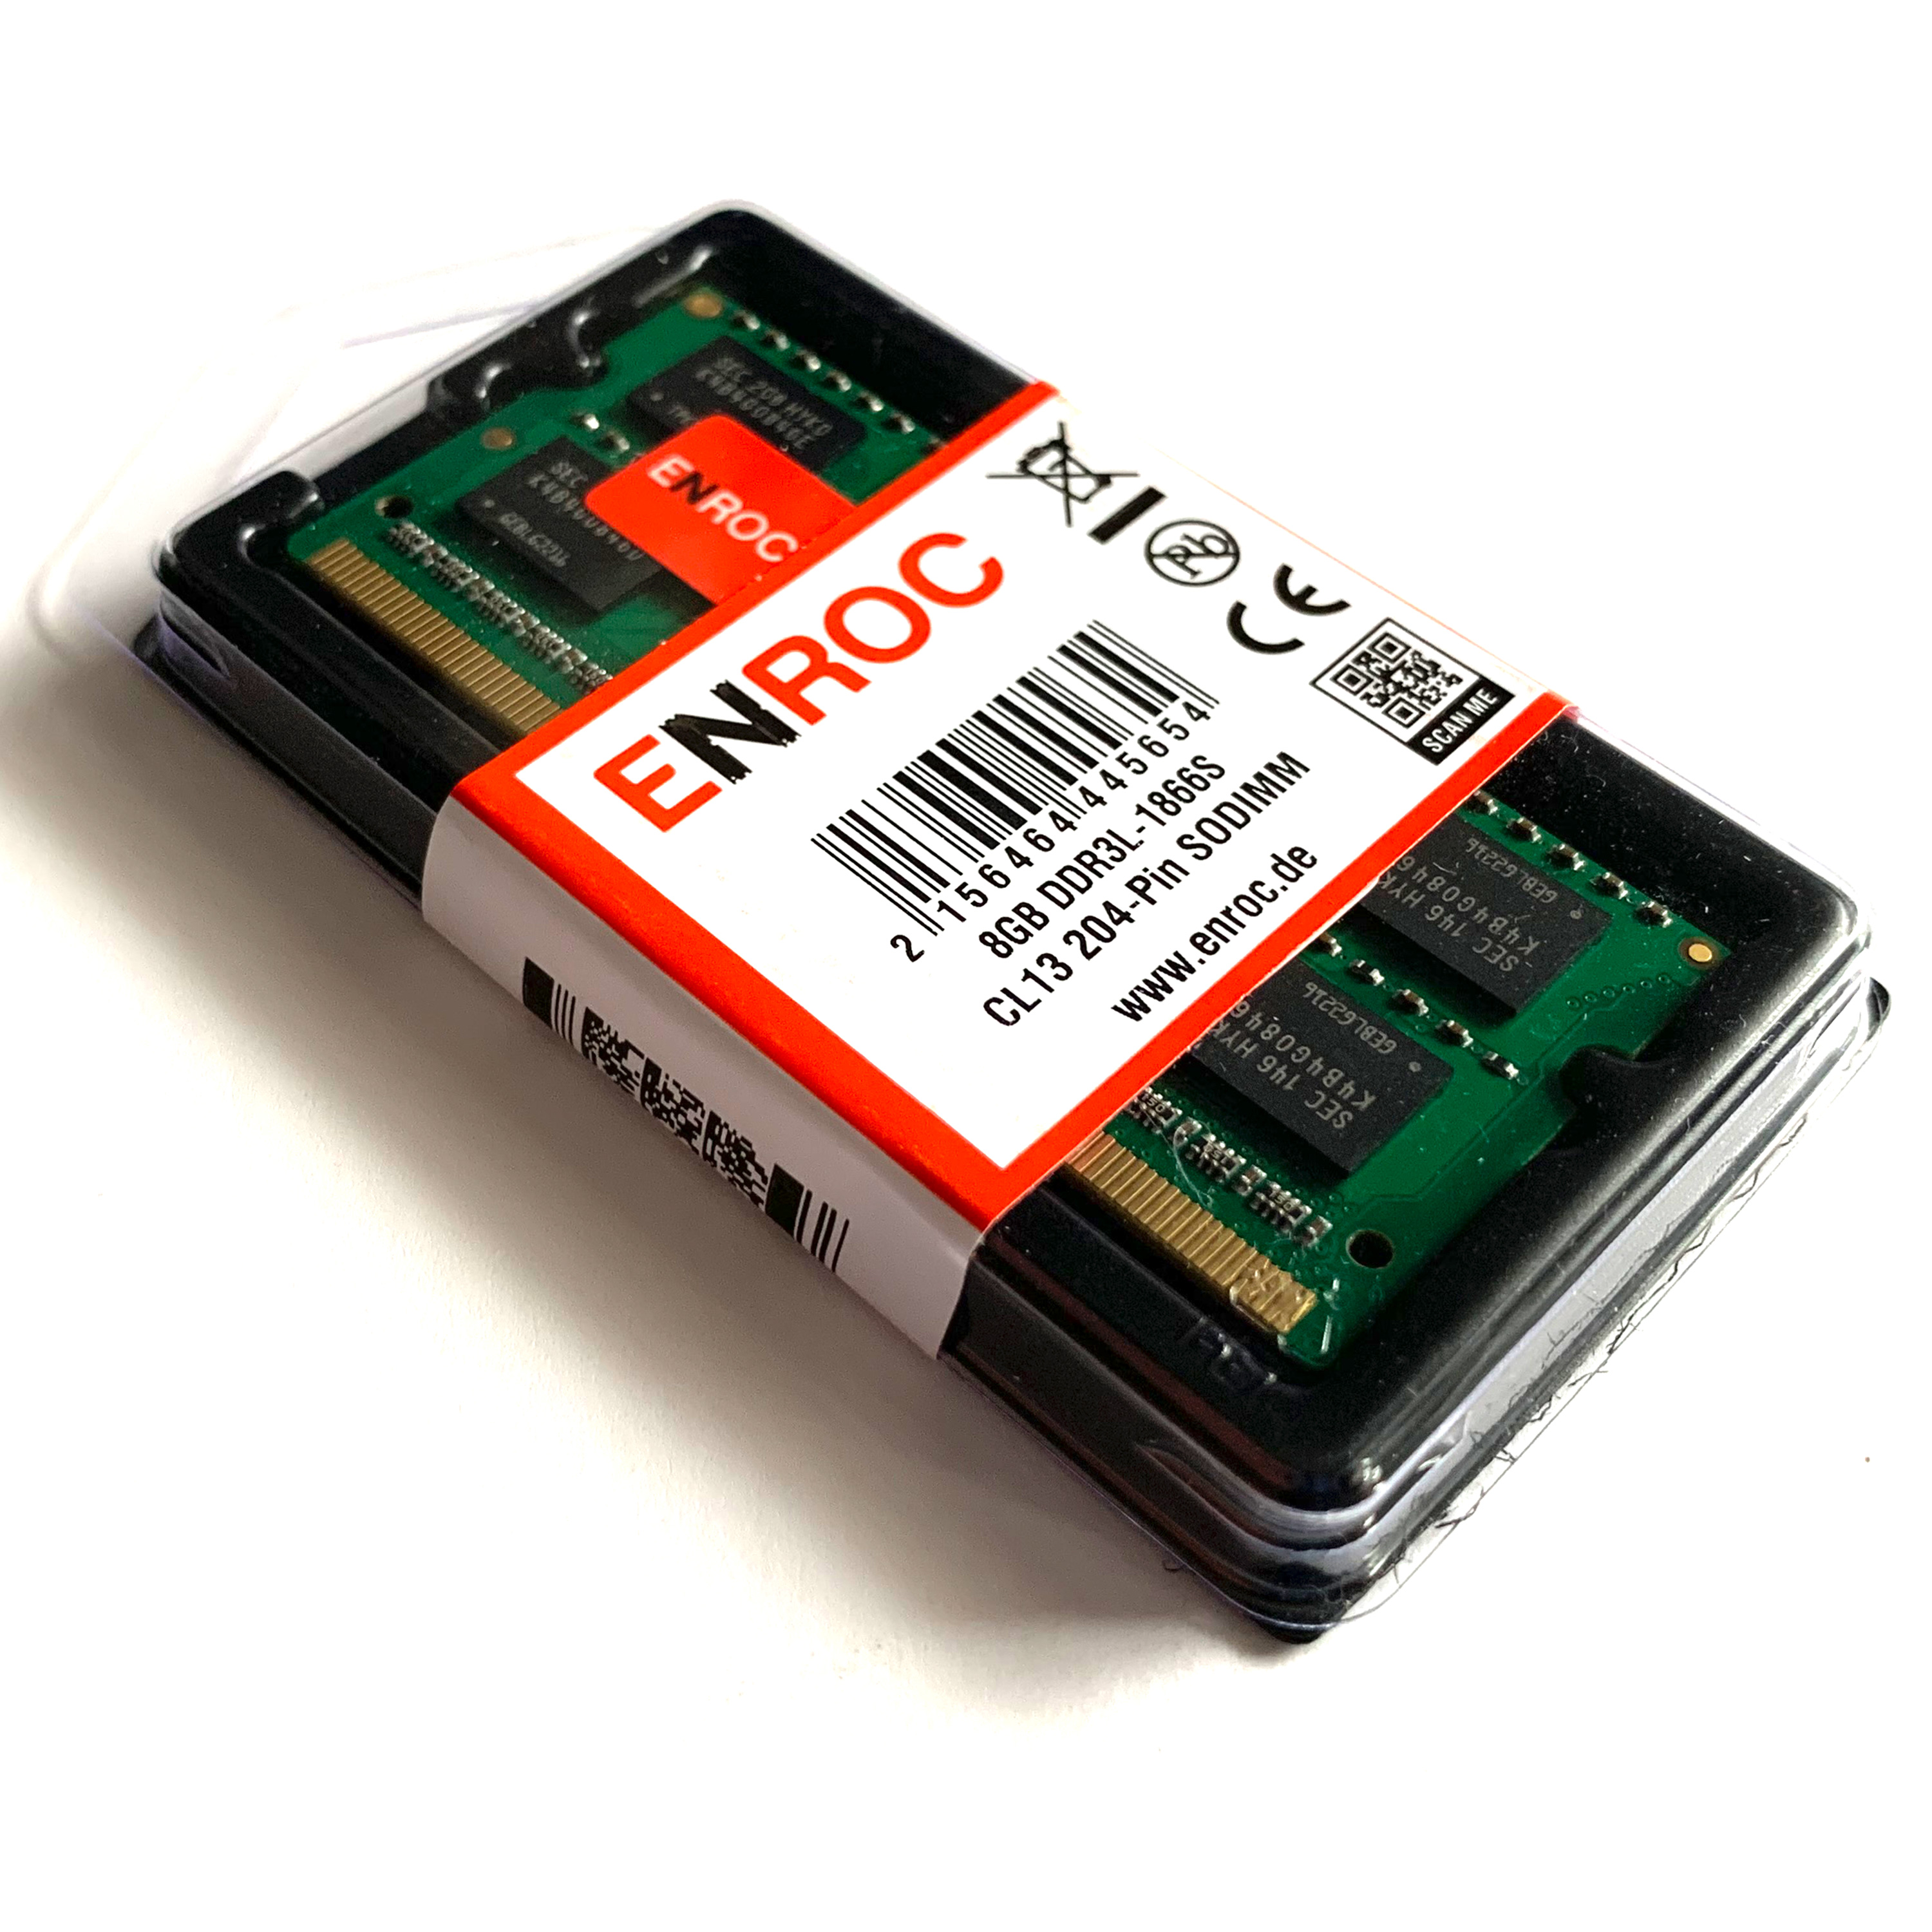 DDR3L ERC421 1866 ENROC Arbeitsspeicher 8 RAM DDR3L MHz GB 8GB SO-DIMM